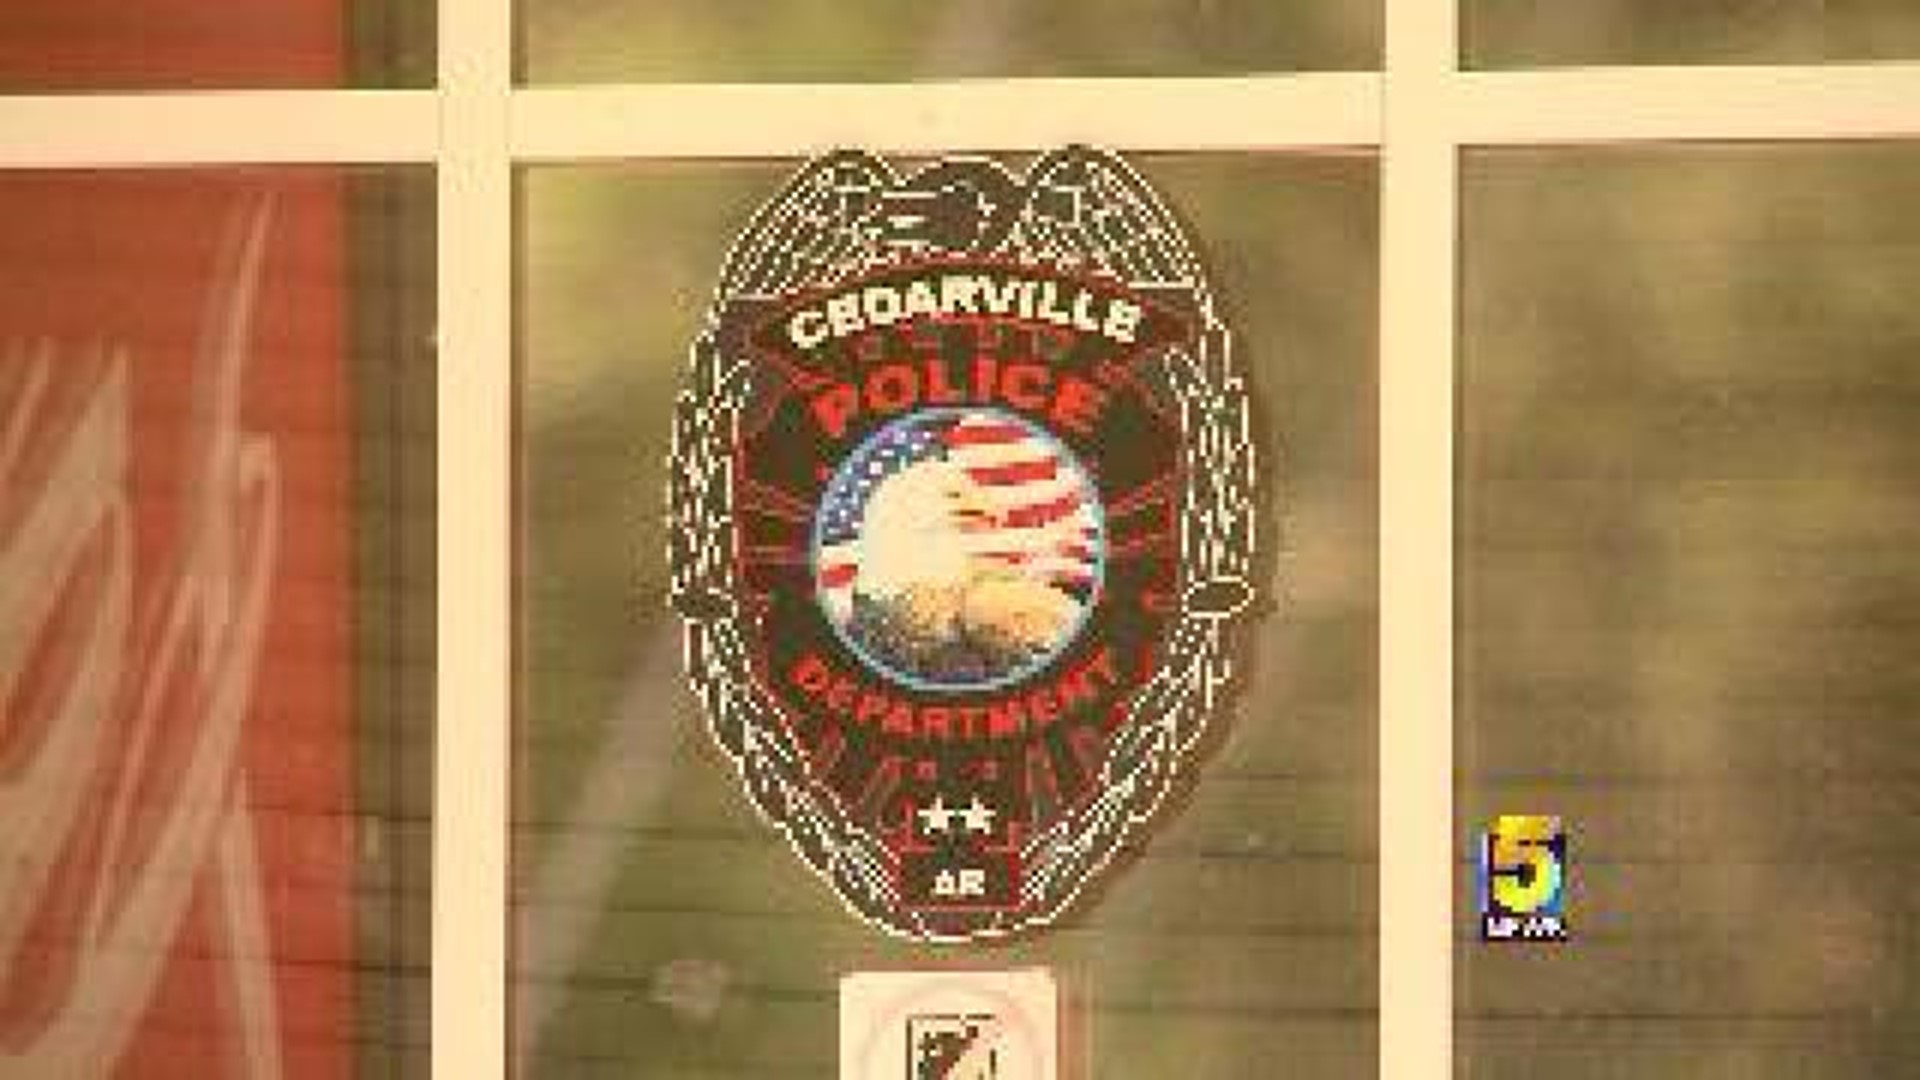 Cedarville Police